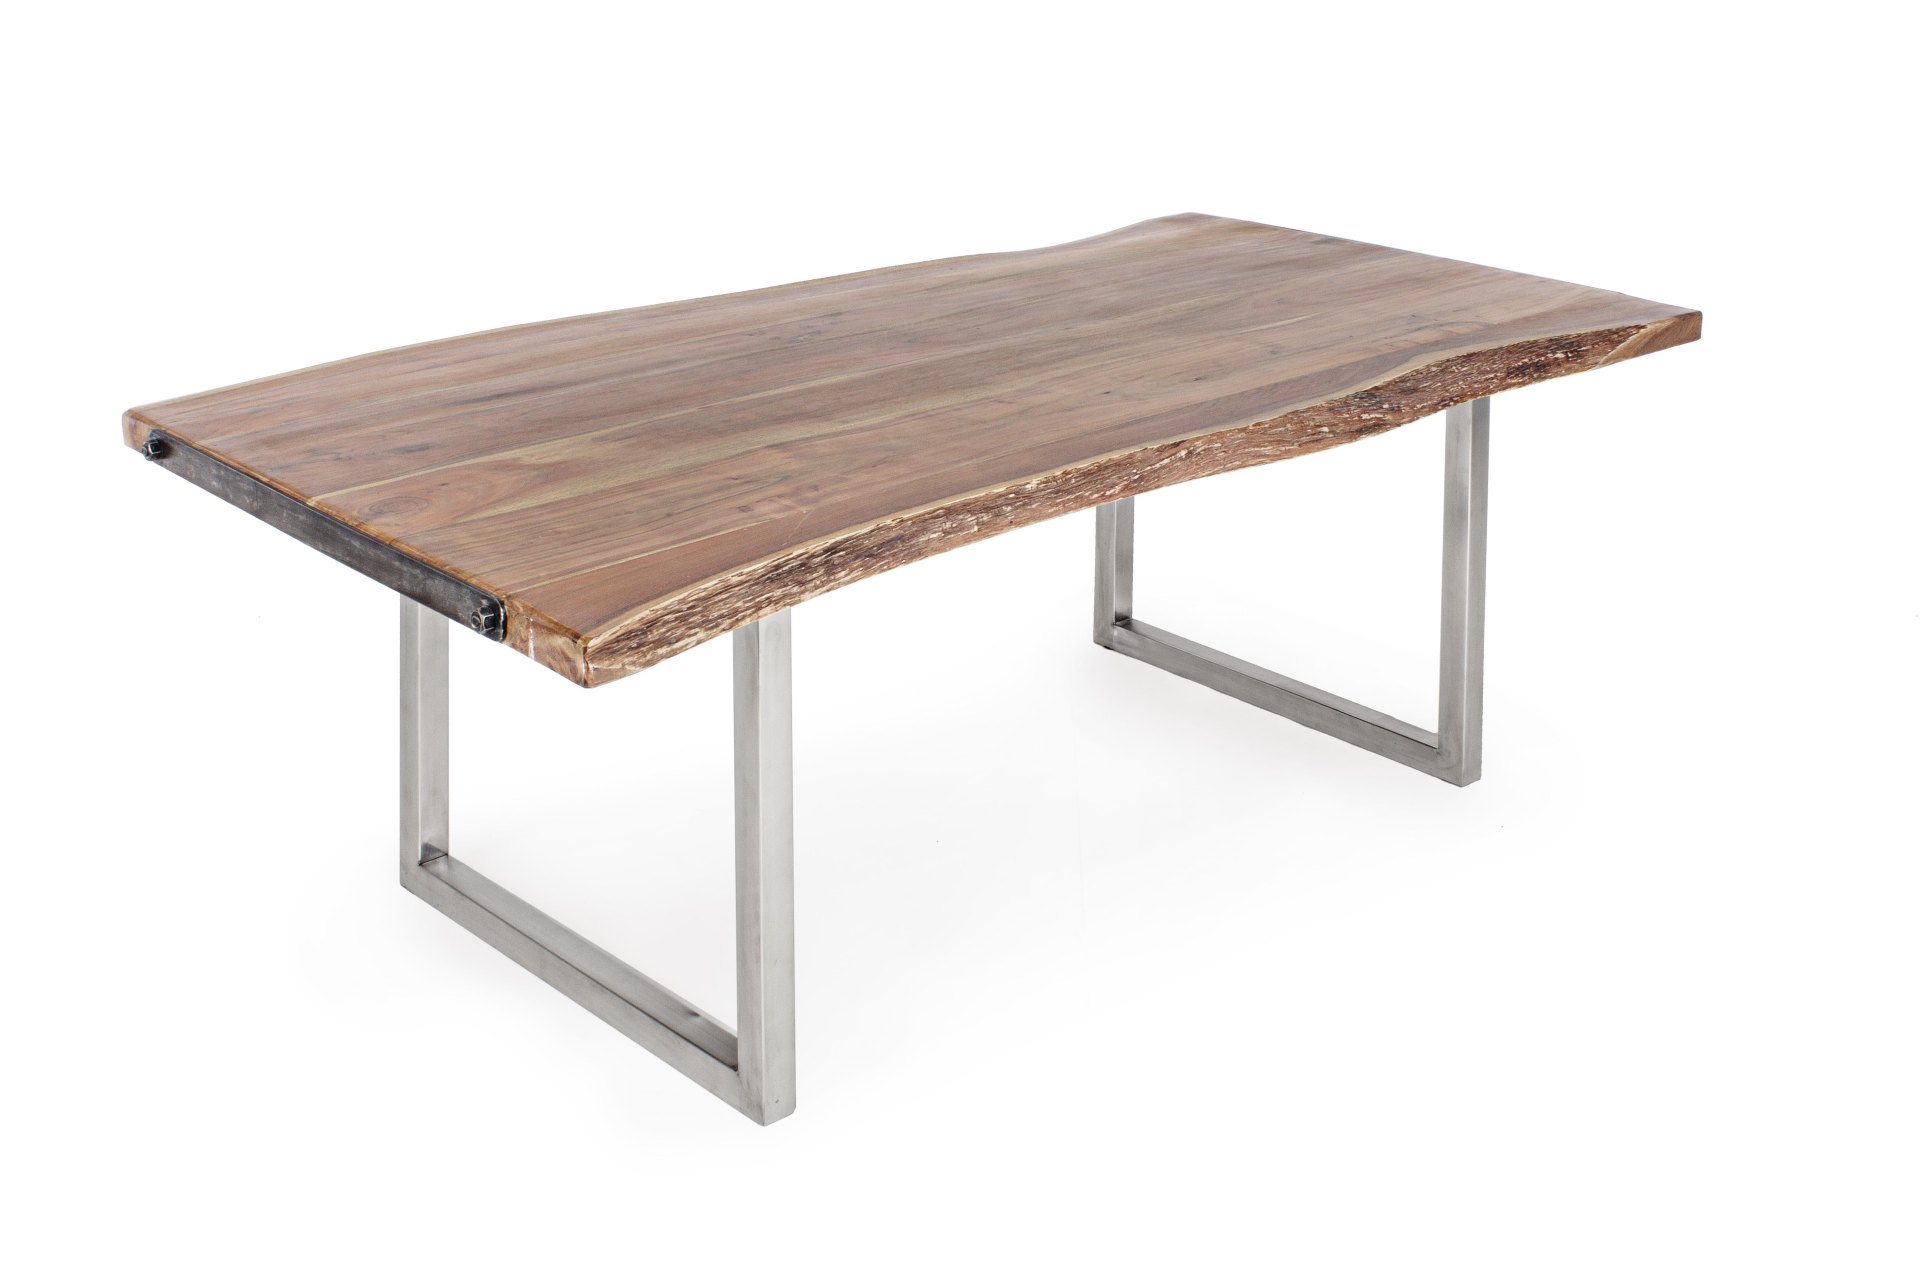 Der Esstisch Osbert überzeugt mit seinem moderndem Design. Gefertigt wurde er aus Akazienholz, welches einen natürlichen Farbton besitzt. Das Gestell des Tisches ist aus Metall und ist in eine silberne Farbe. Der Tisch besitzt eine Breite von 220 cm.